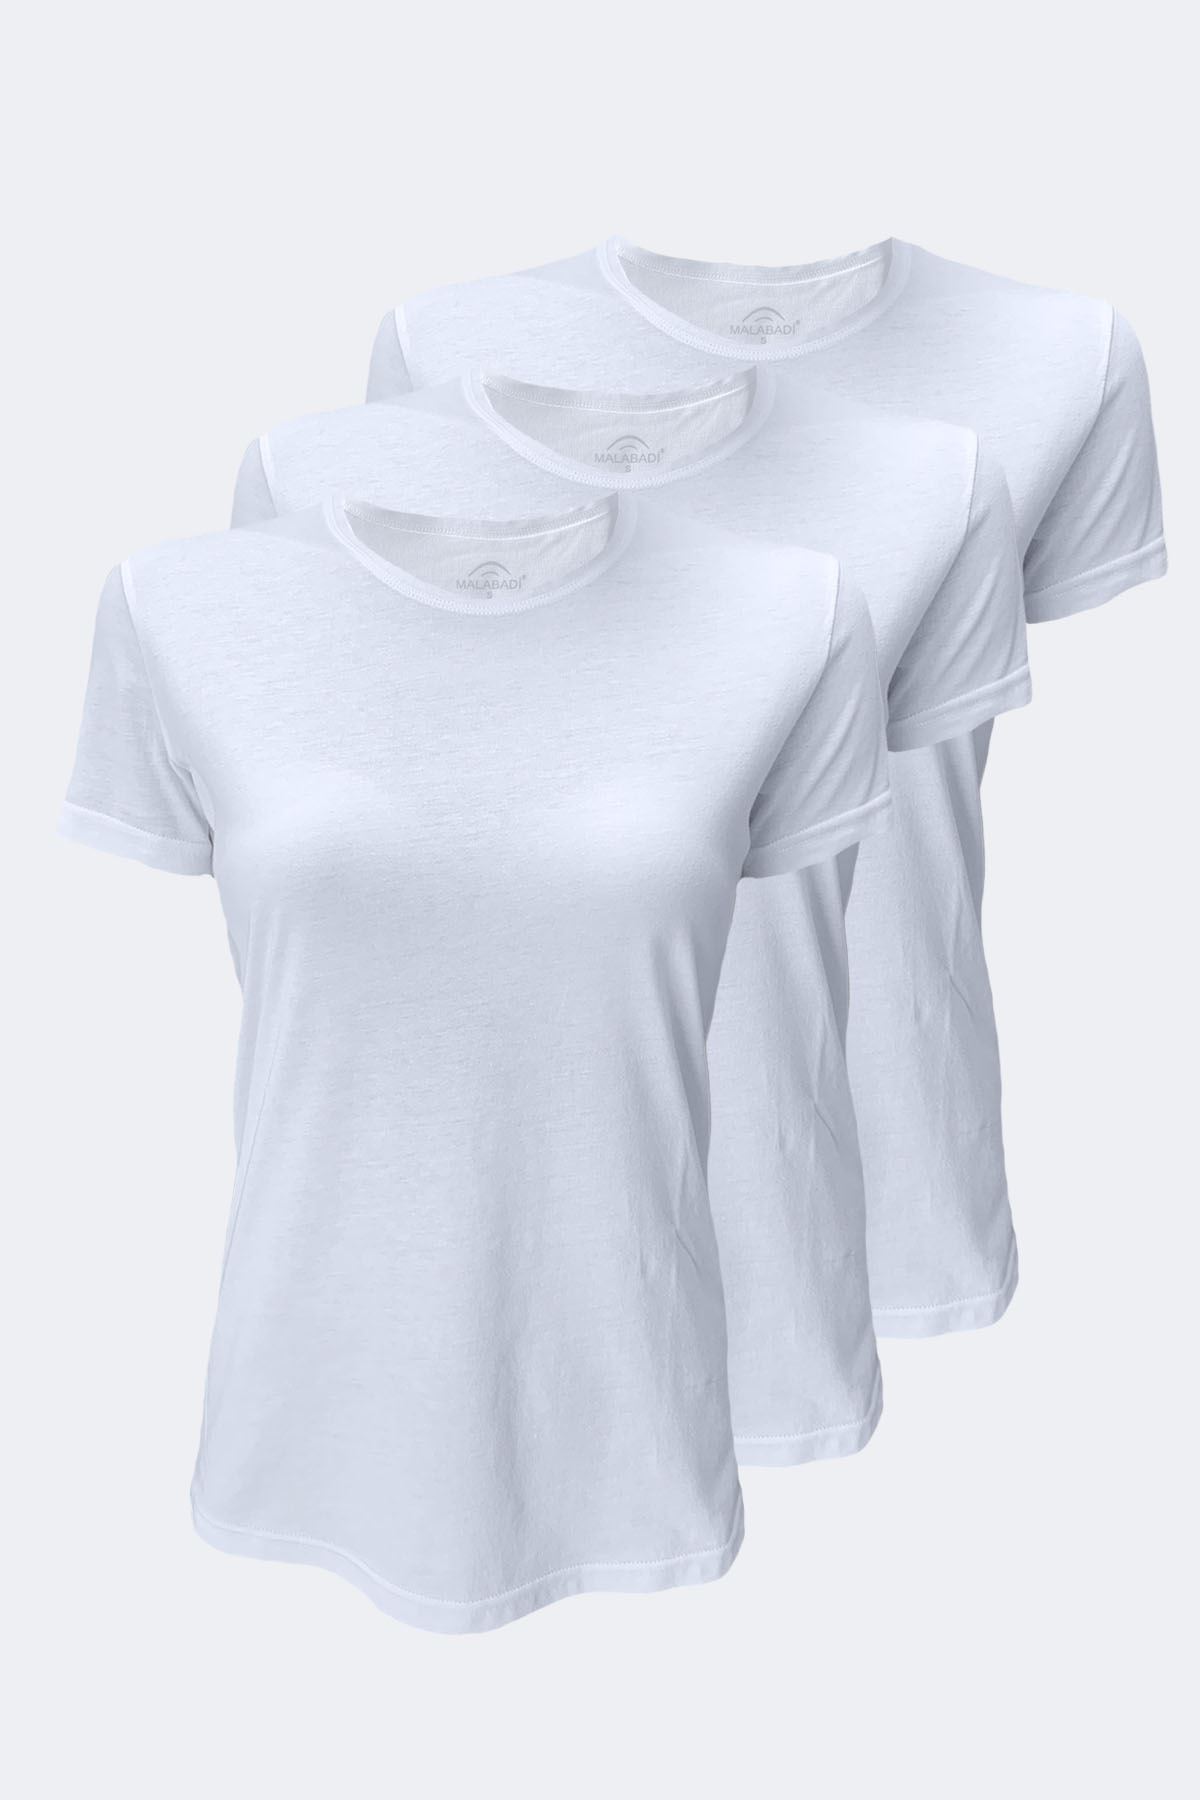 Kadın Beyaz 3 Lü Basic Yuvarlak Yaka İnce Modal Yaz Serinliği Tshirt 3M7050